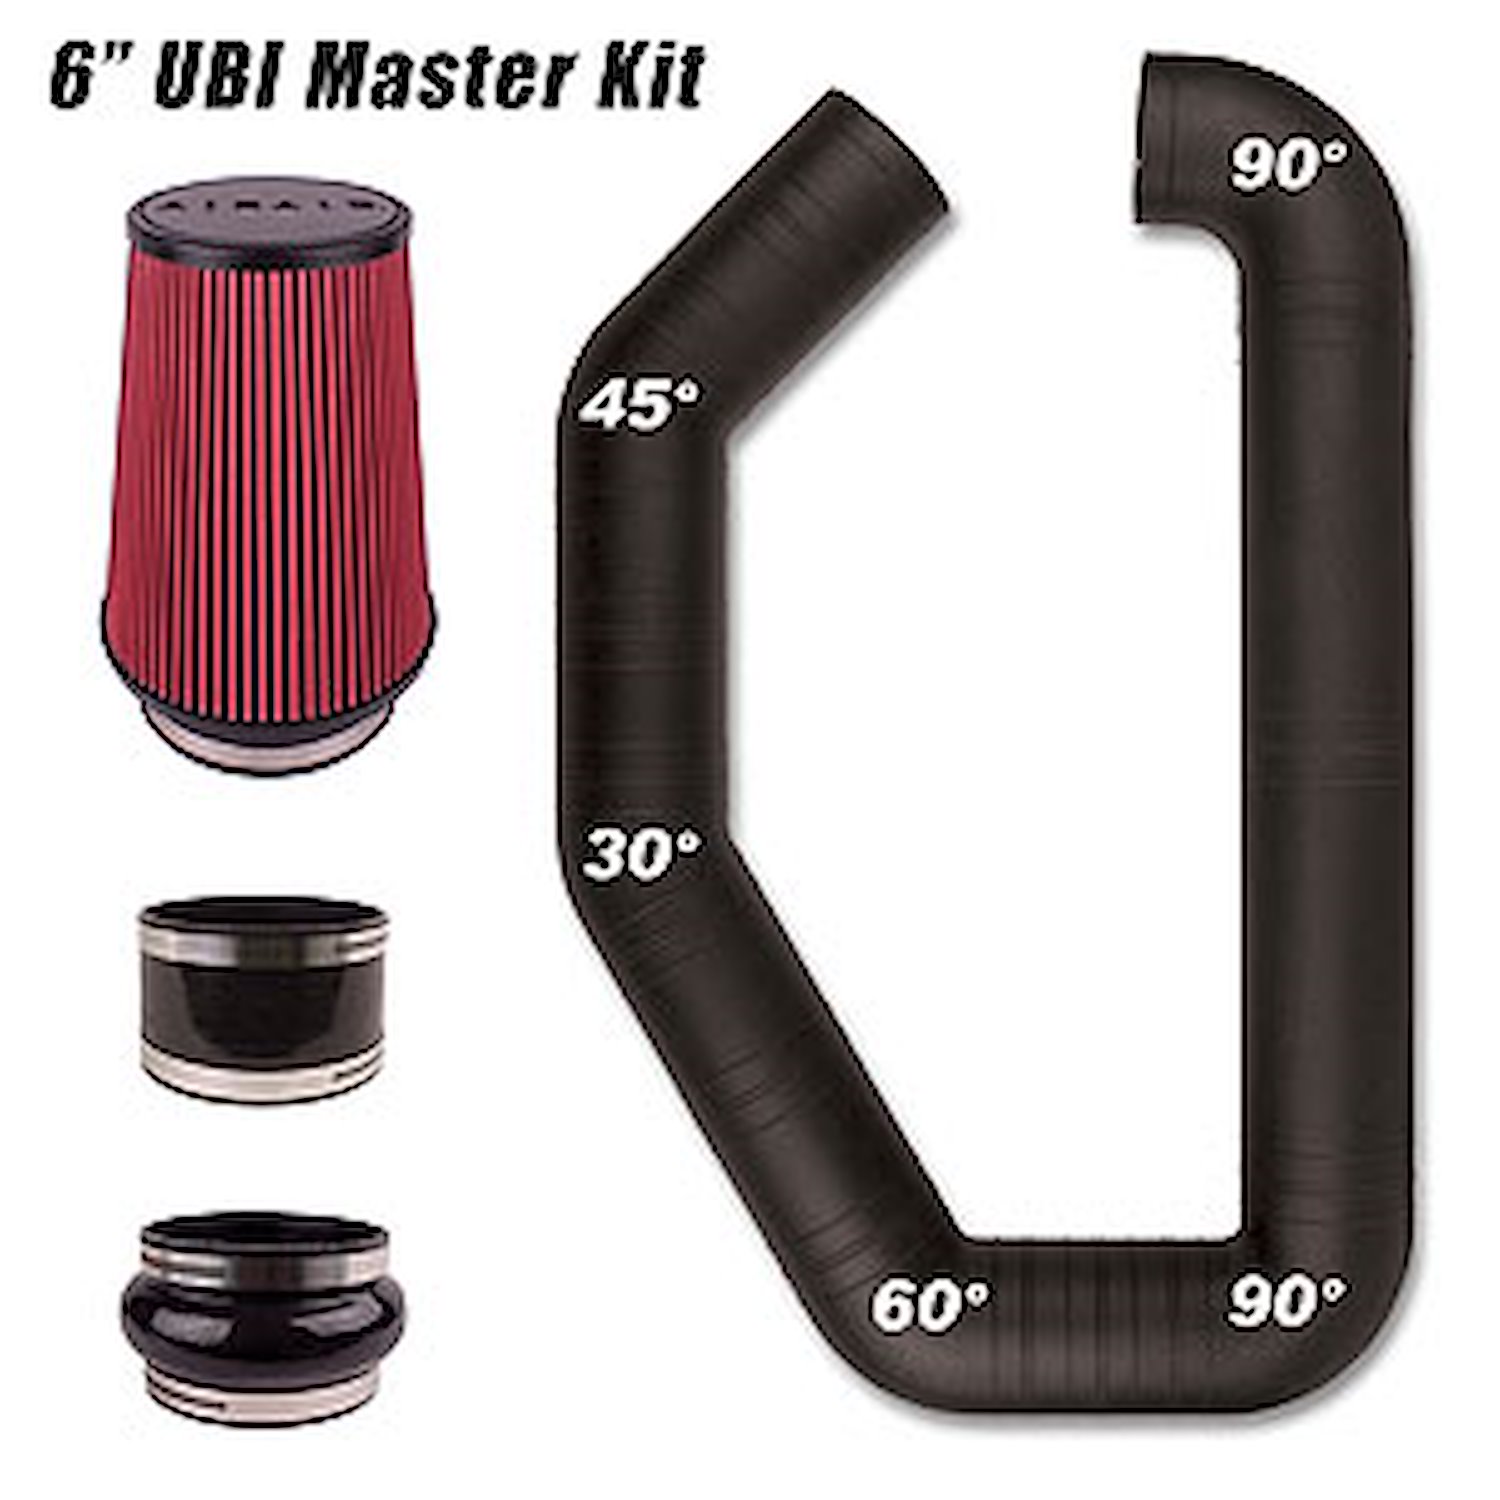 UBI Master Kit I Universal